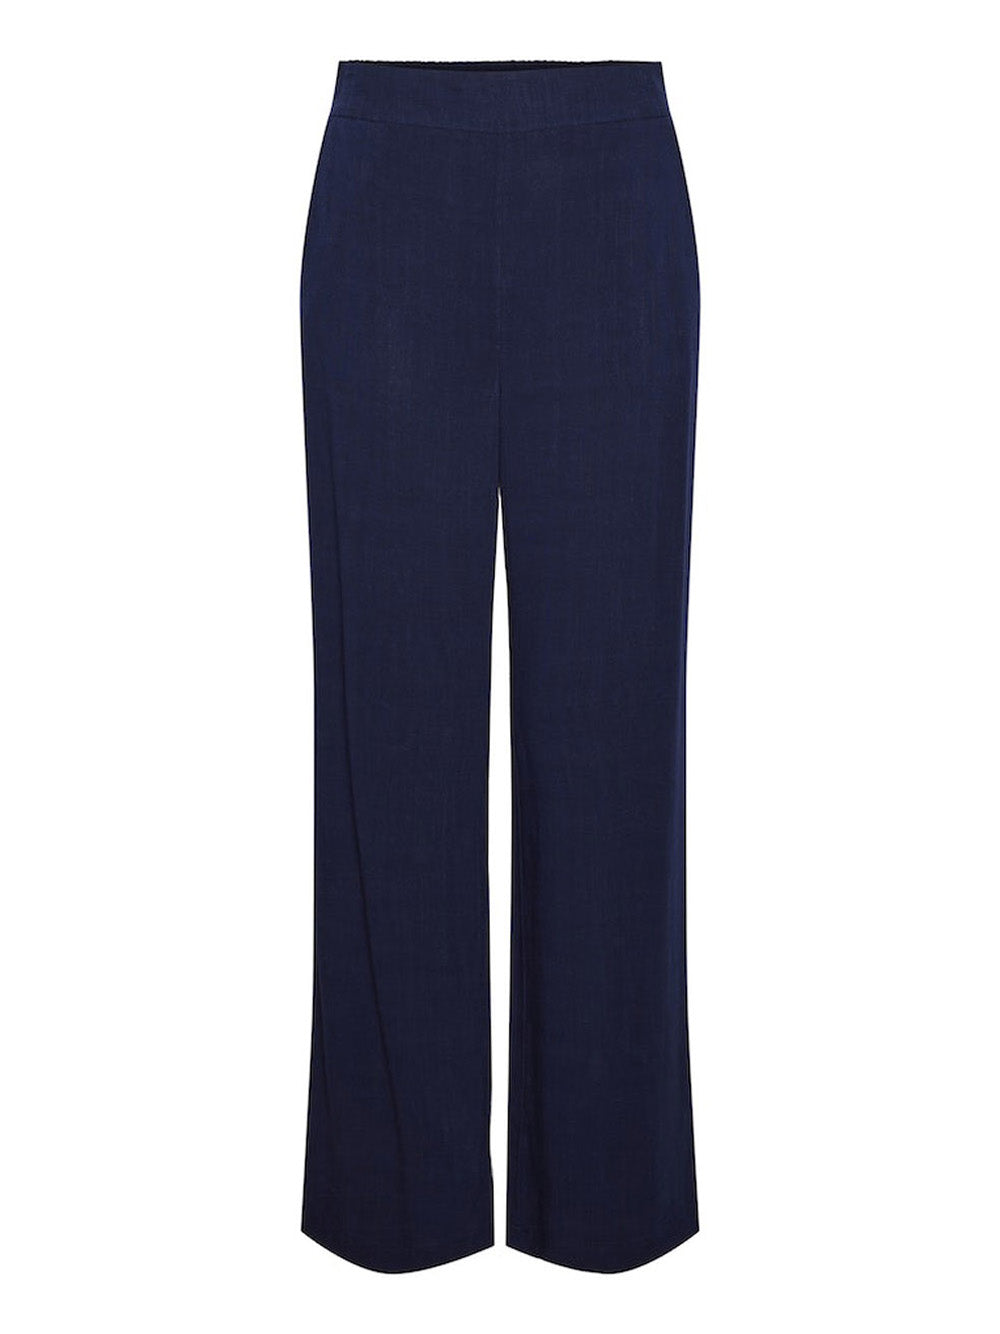 PIECES Pantalone Donna - Blu modello 17146434